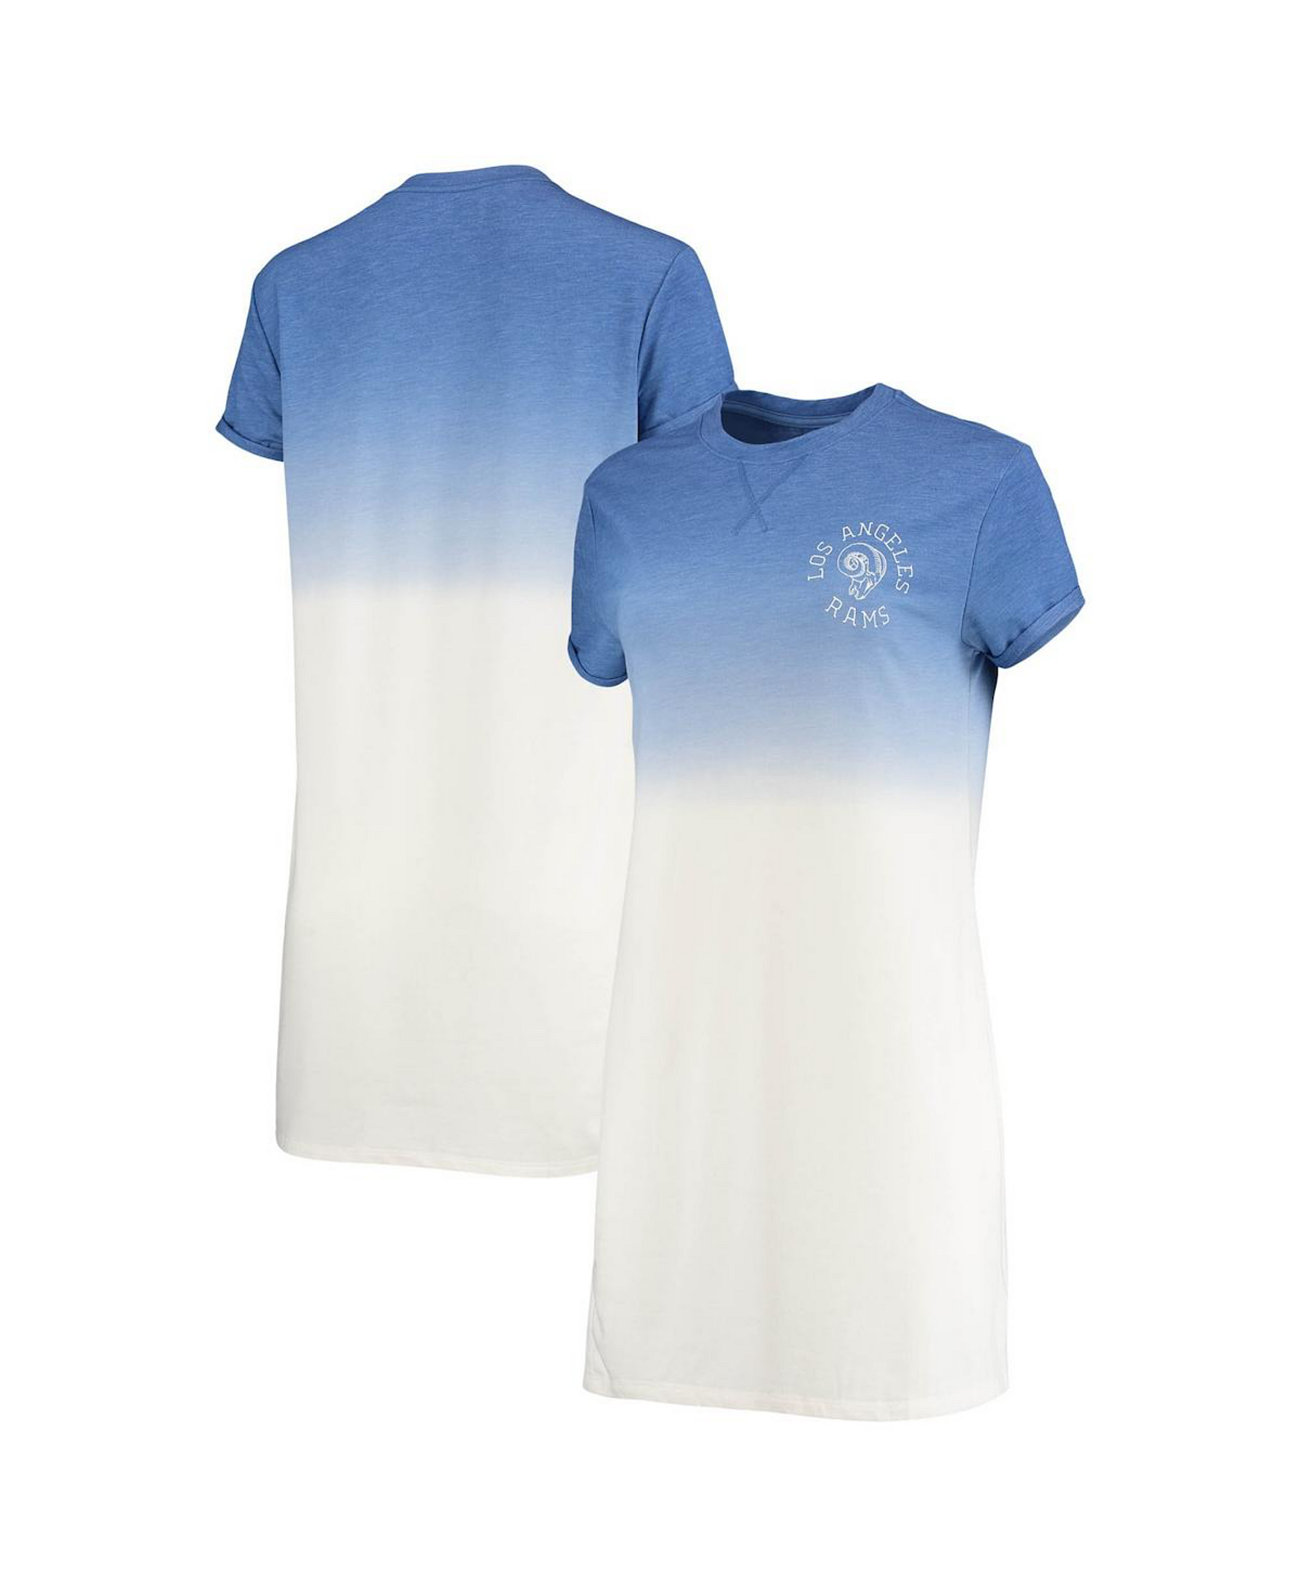 Женское платье-футболка Los Angeles Rams с эффектом омбре из трех слоев меланжевого королевского и белого цветов с эффектом омбре Junk Food